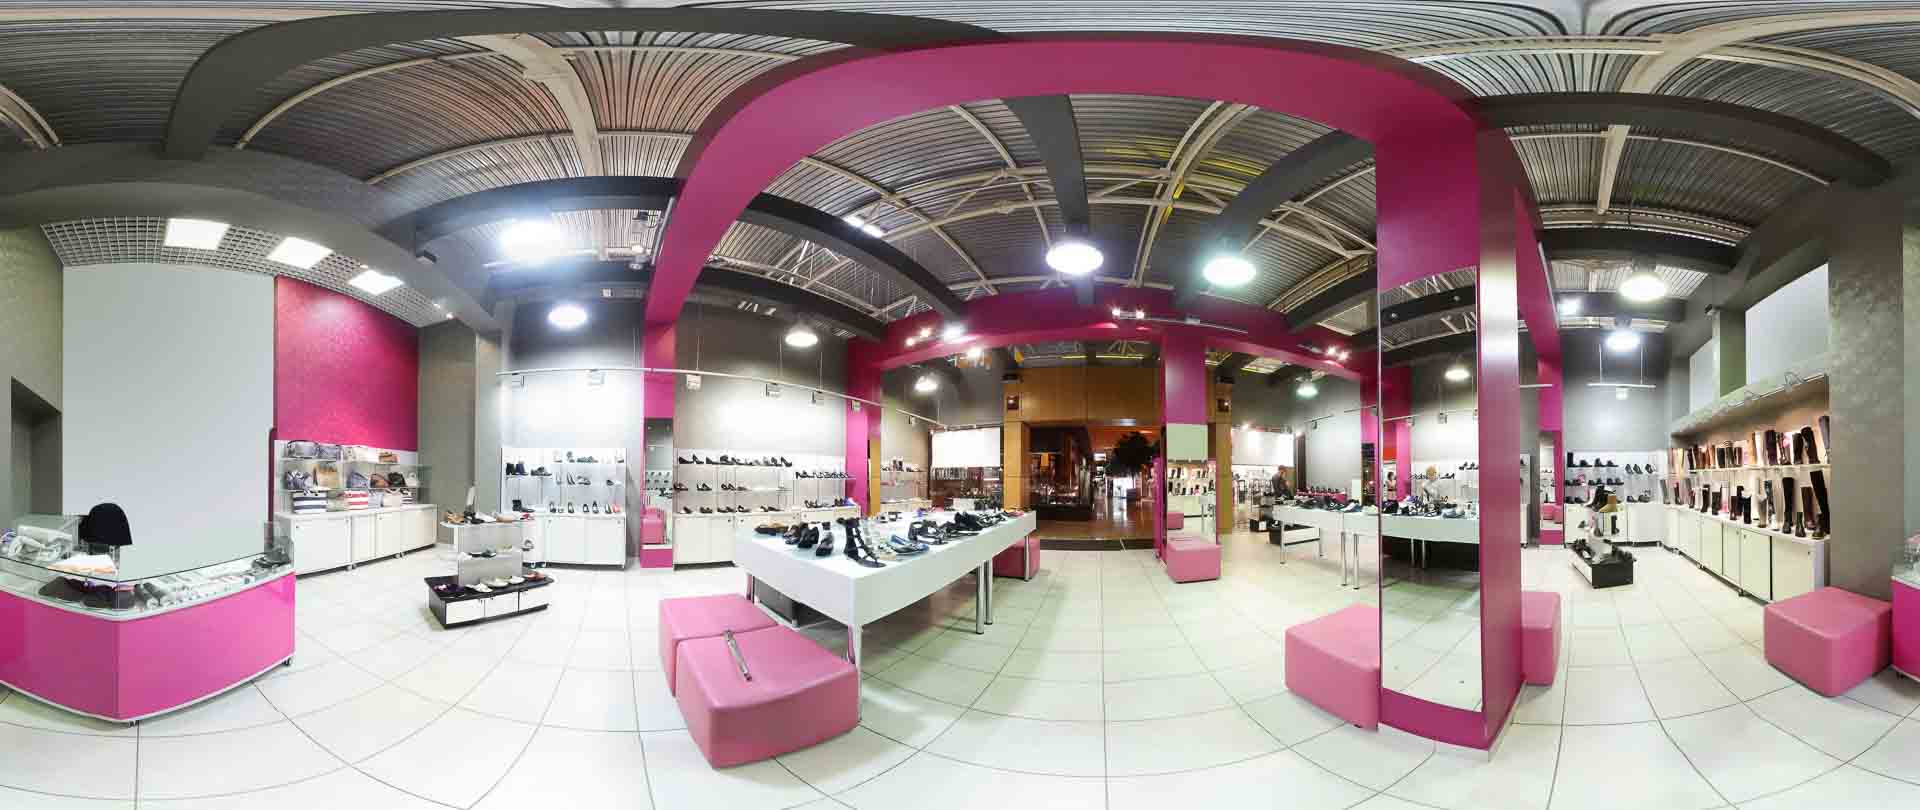 virtual tour 360 foto panoramiche interni negozio attività commerciale